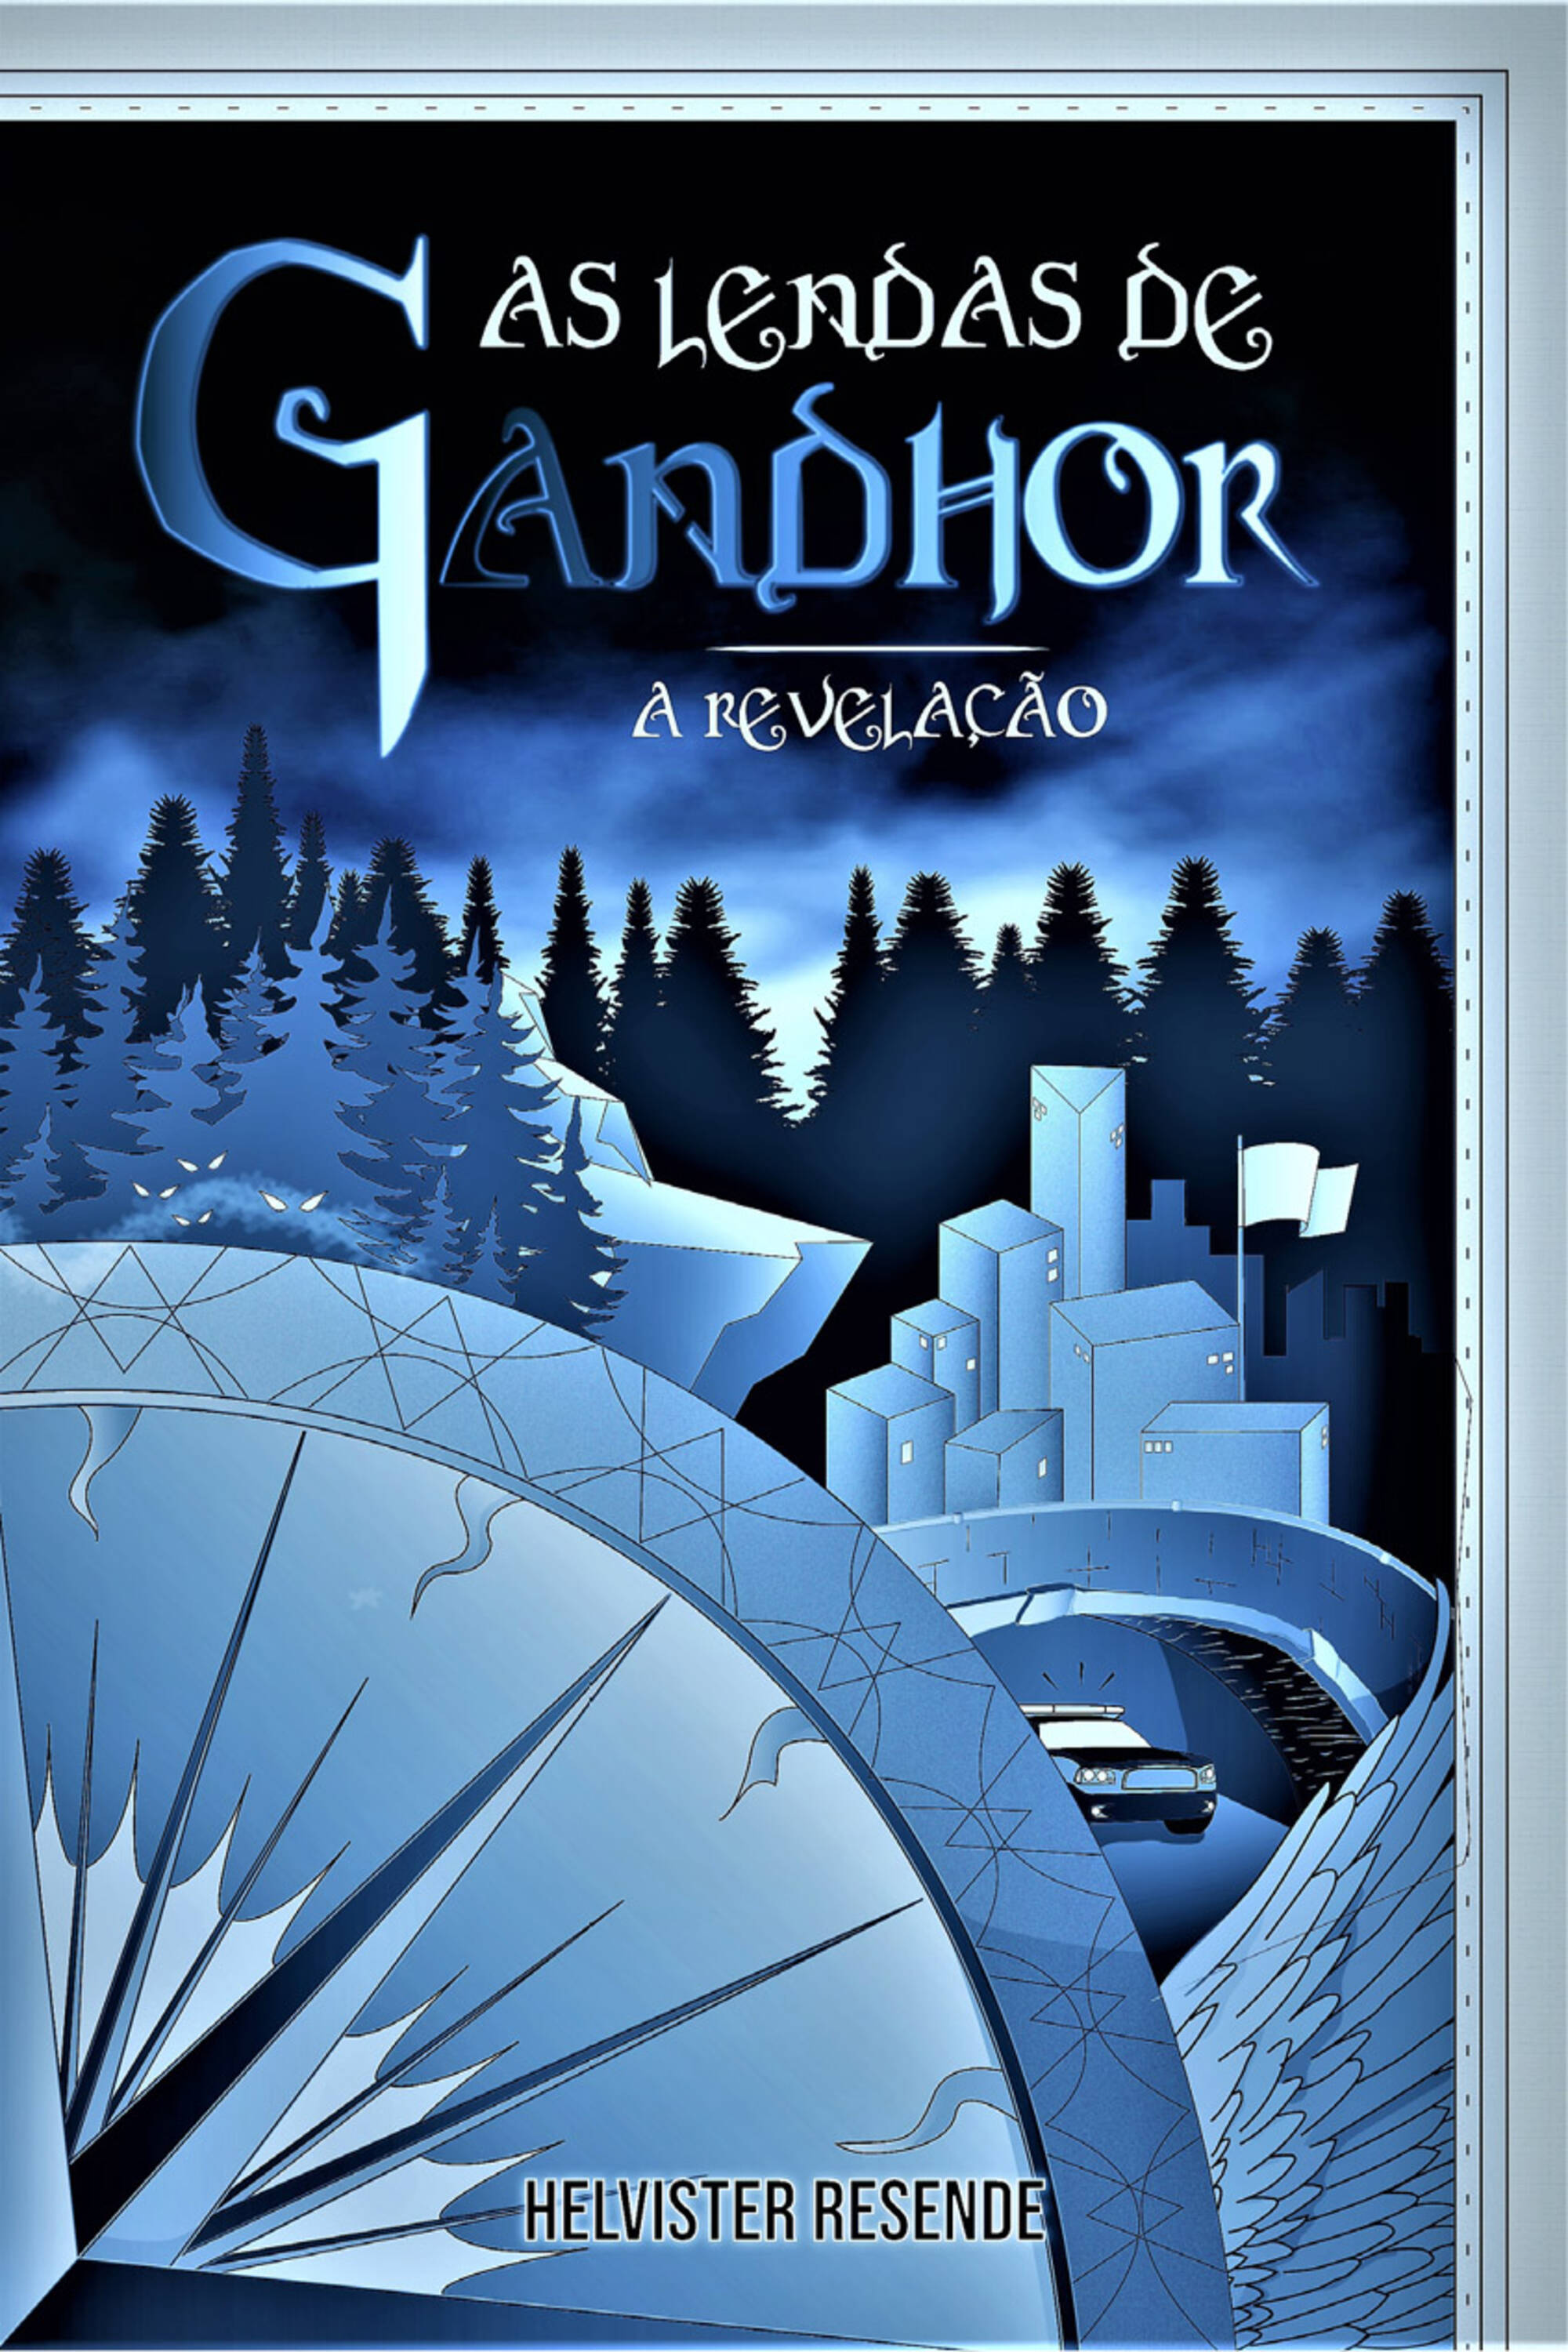 As lendas de Gandhor